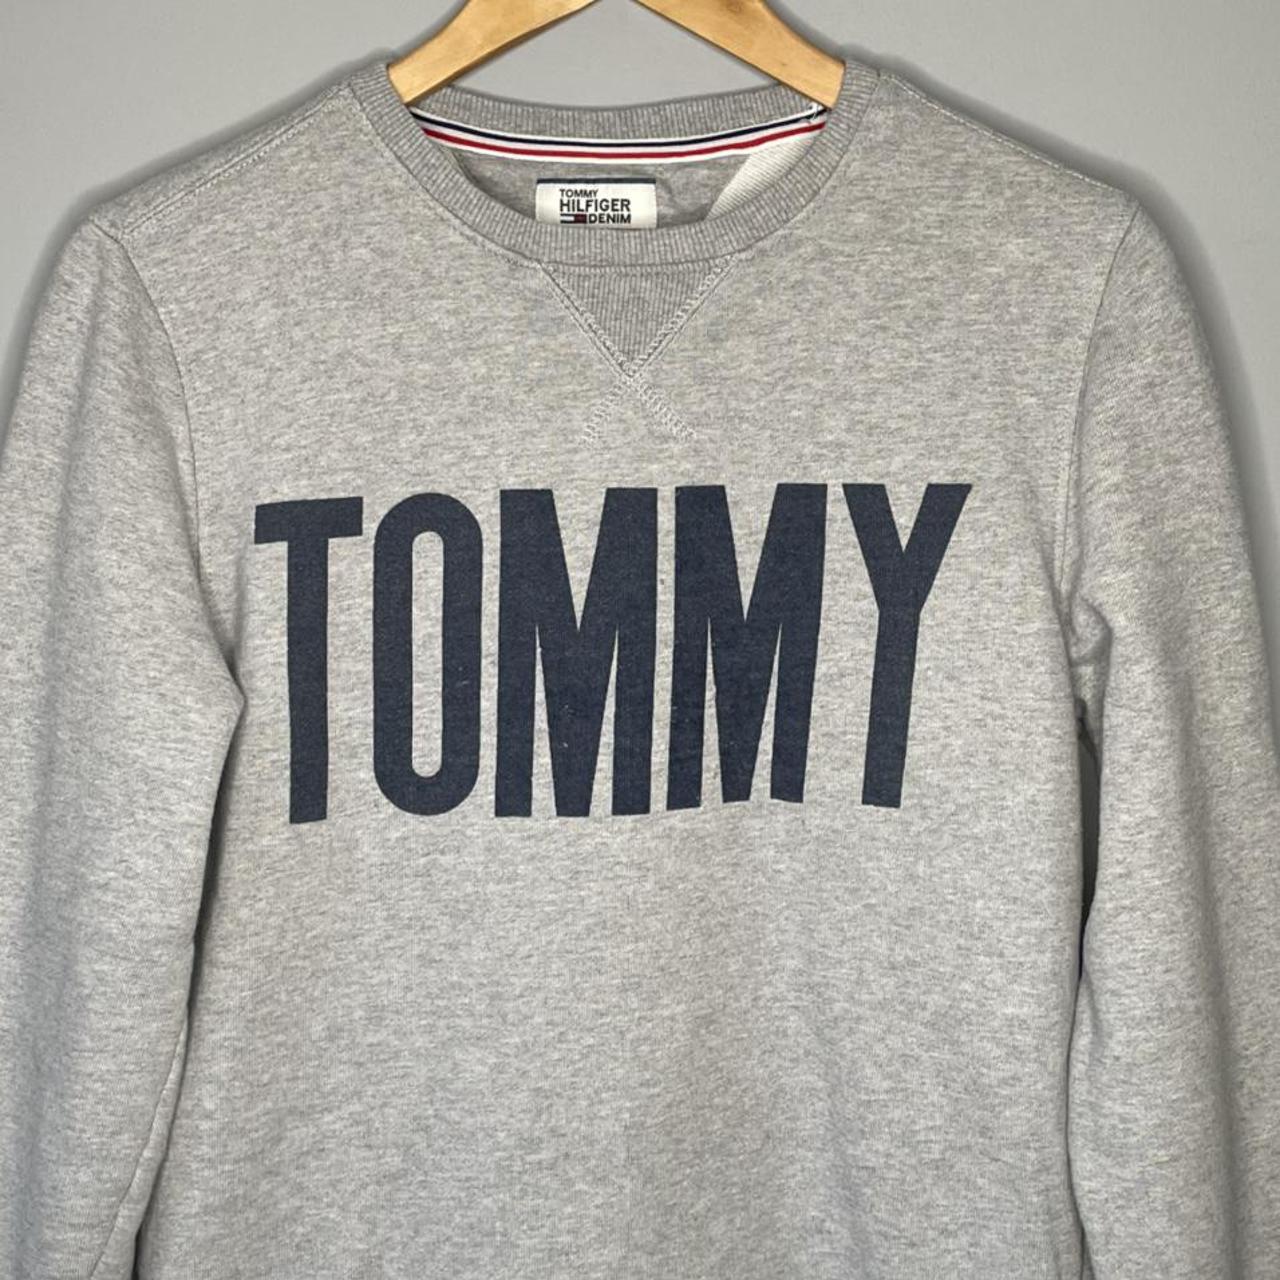 Tommy Hilfiger designer spell out grey crewneck... - Depop